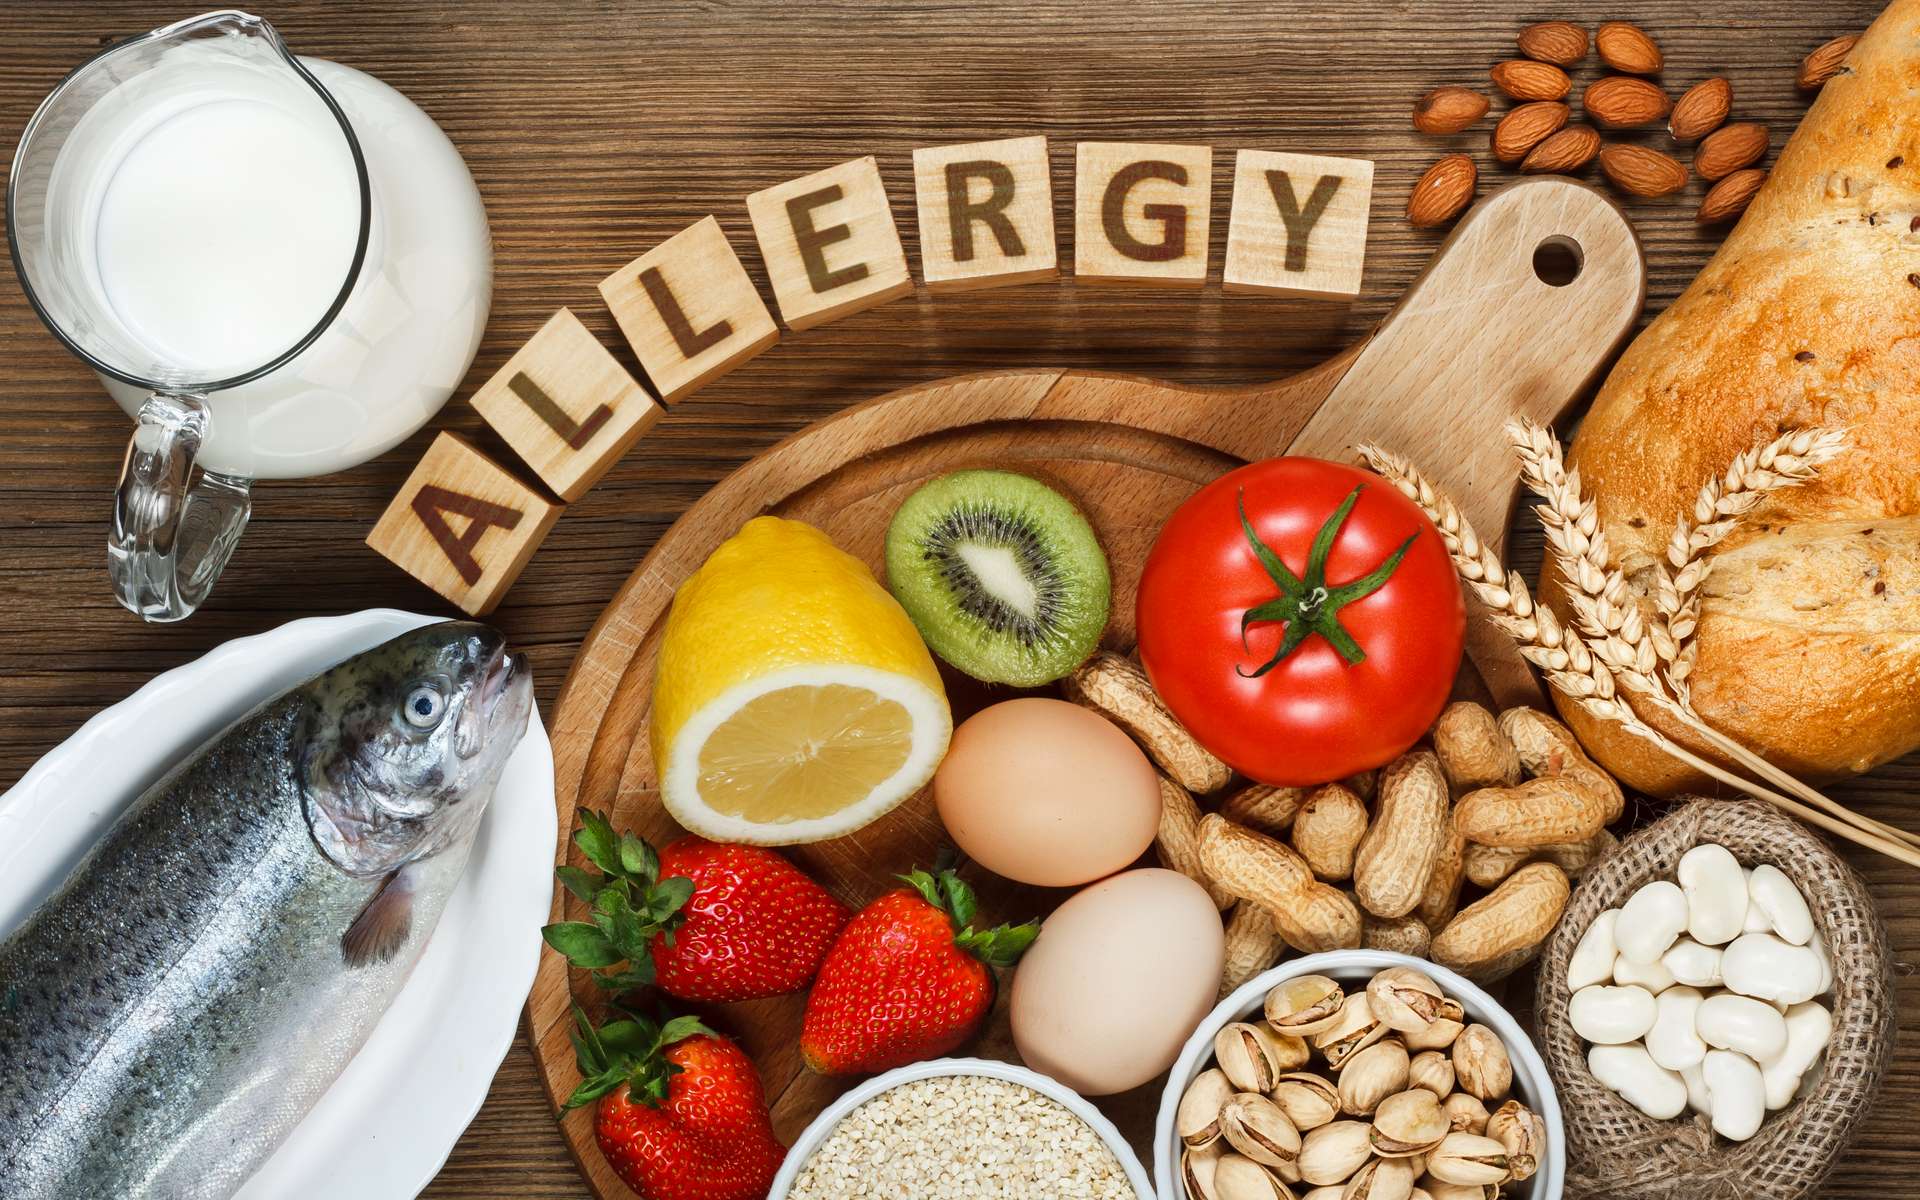 Allergie alimentaire : les faits alternatifs pourraient vous faire prendre de mauvaises décisions